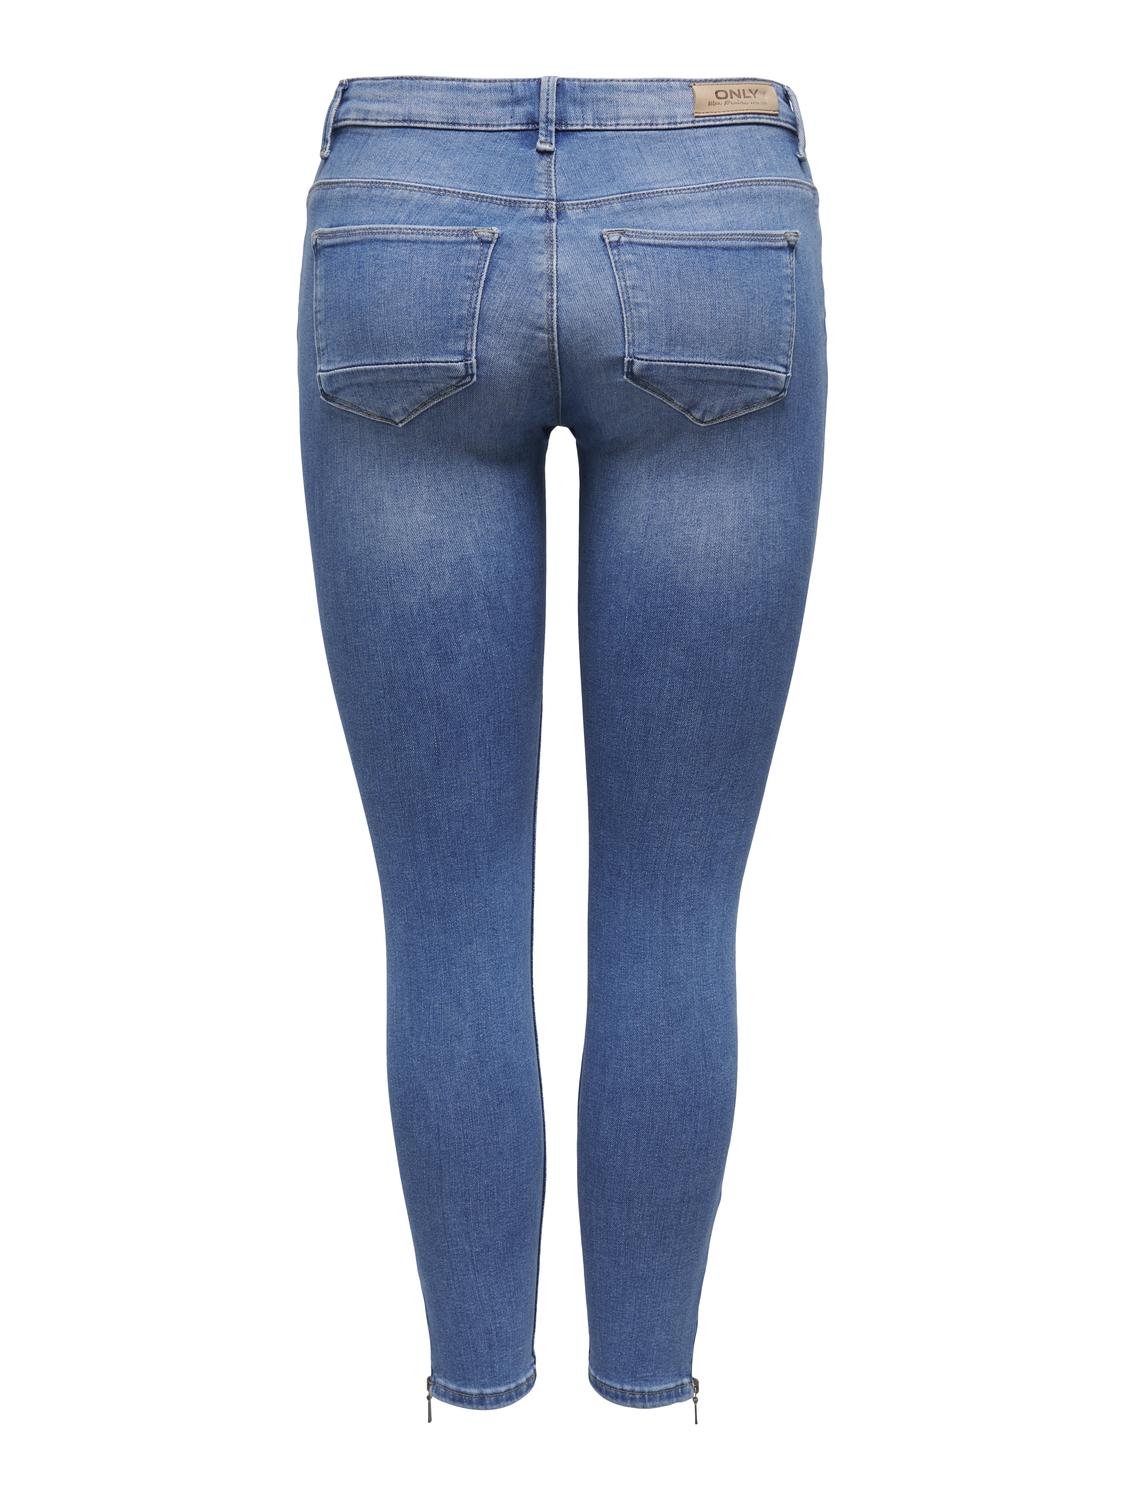 ONLKENDELL Jeans - Light Medium Blue Denim